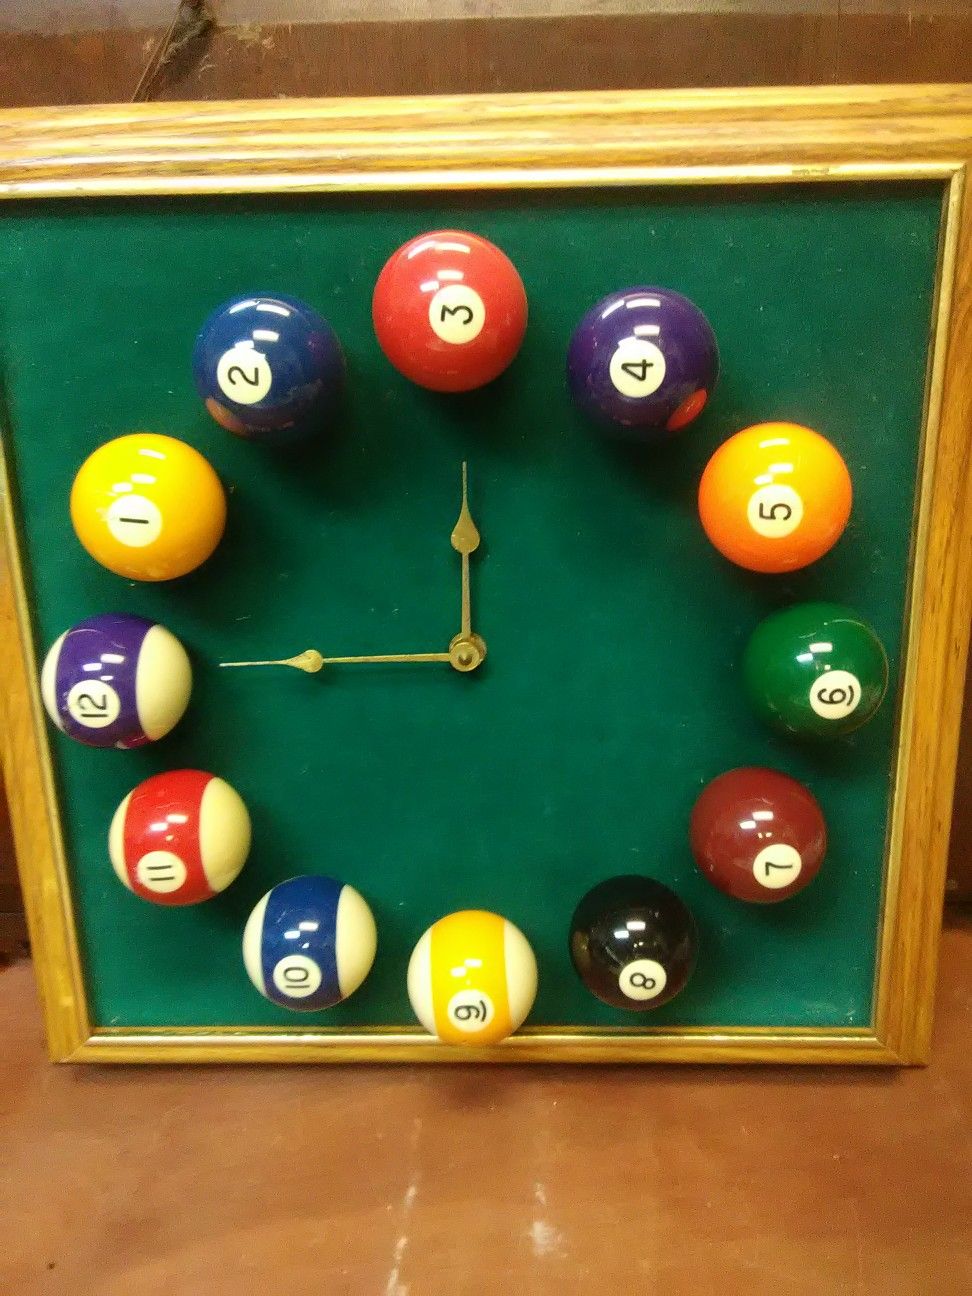 Pool table clock billard balls